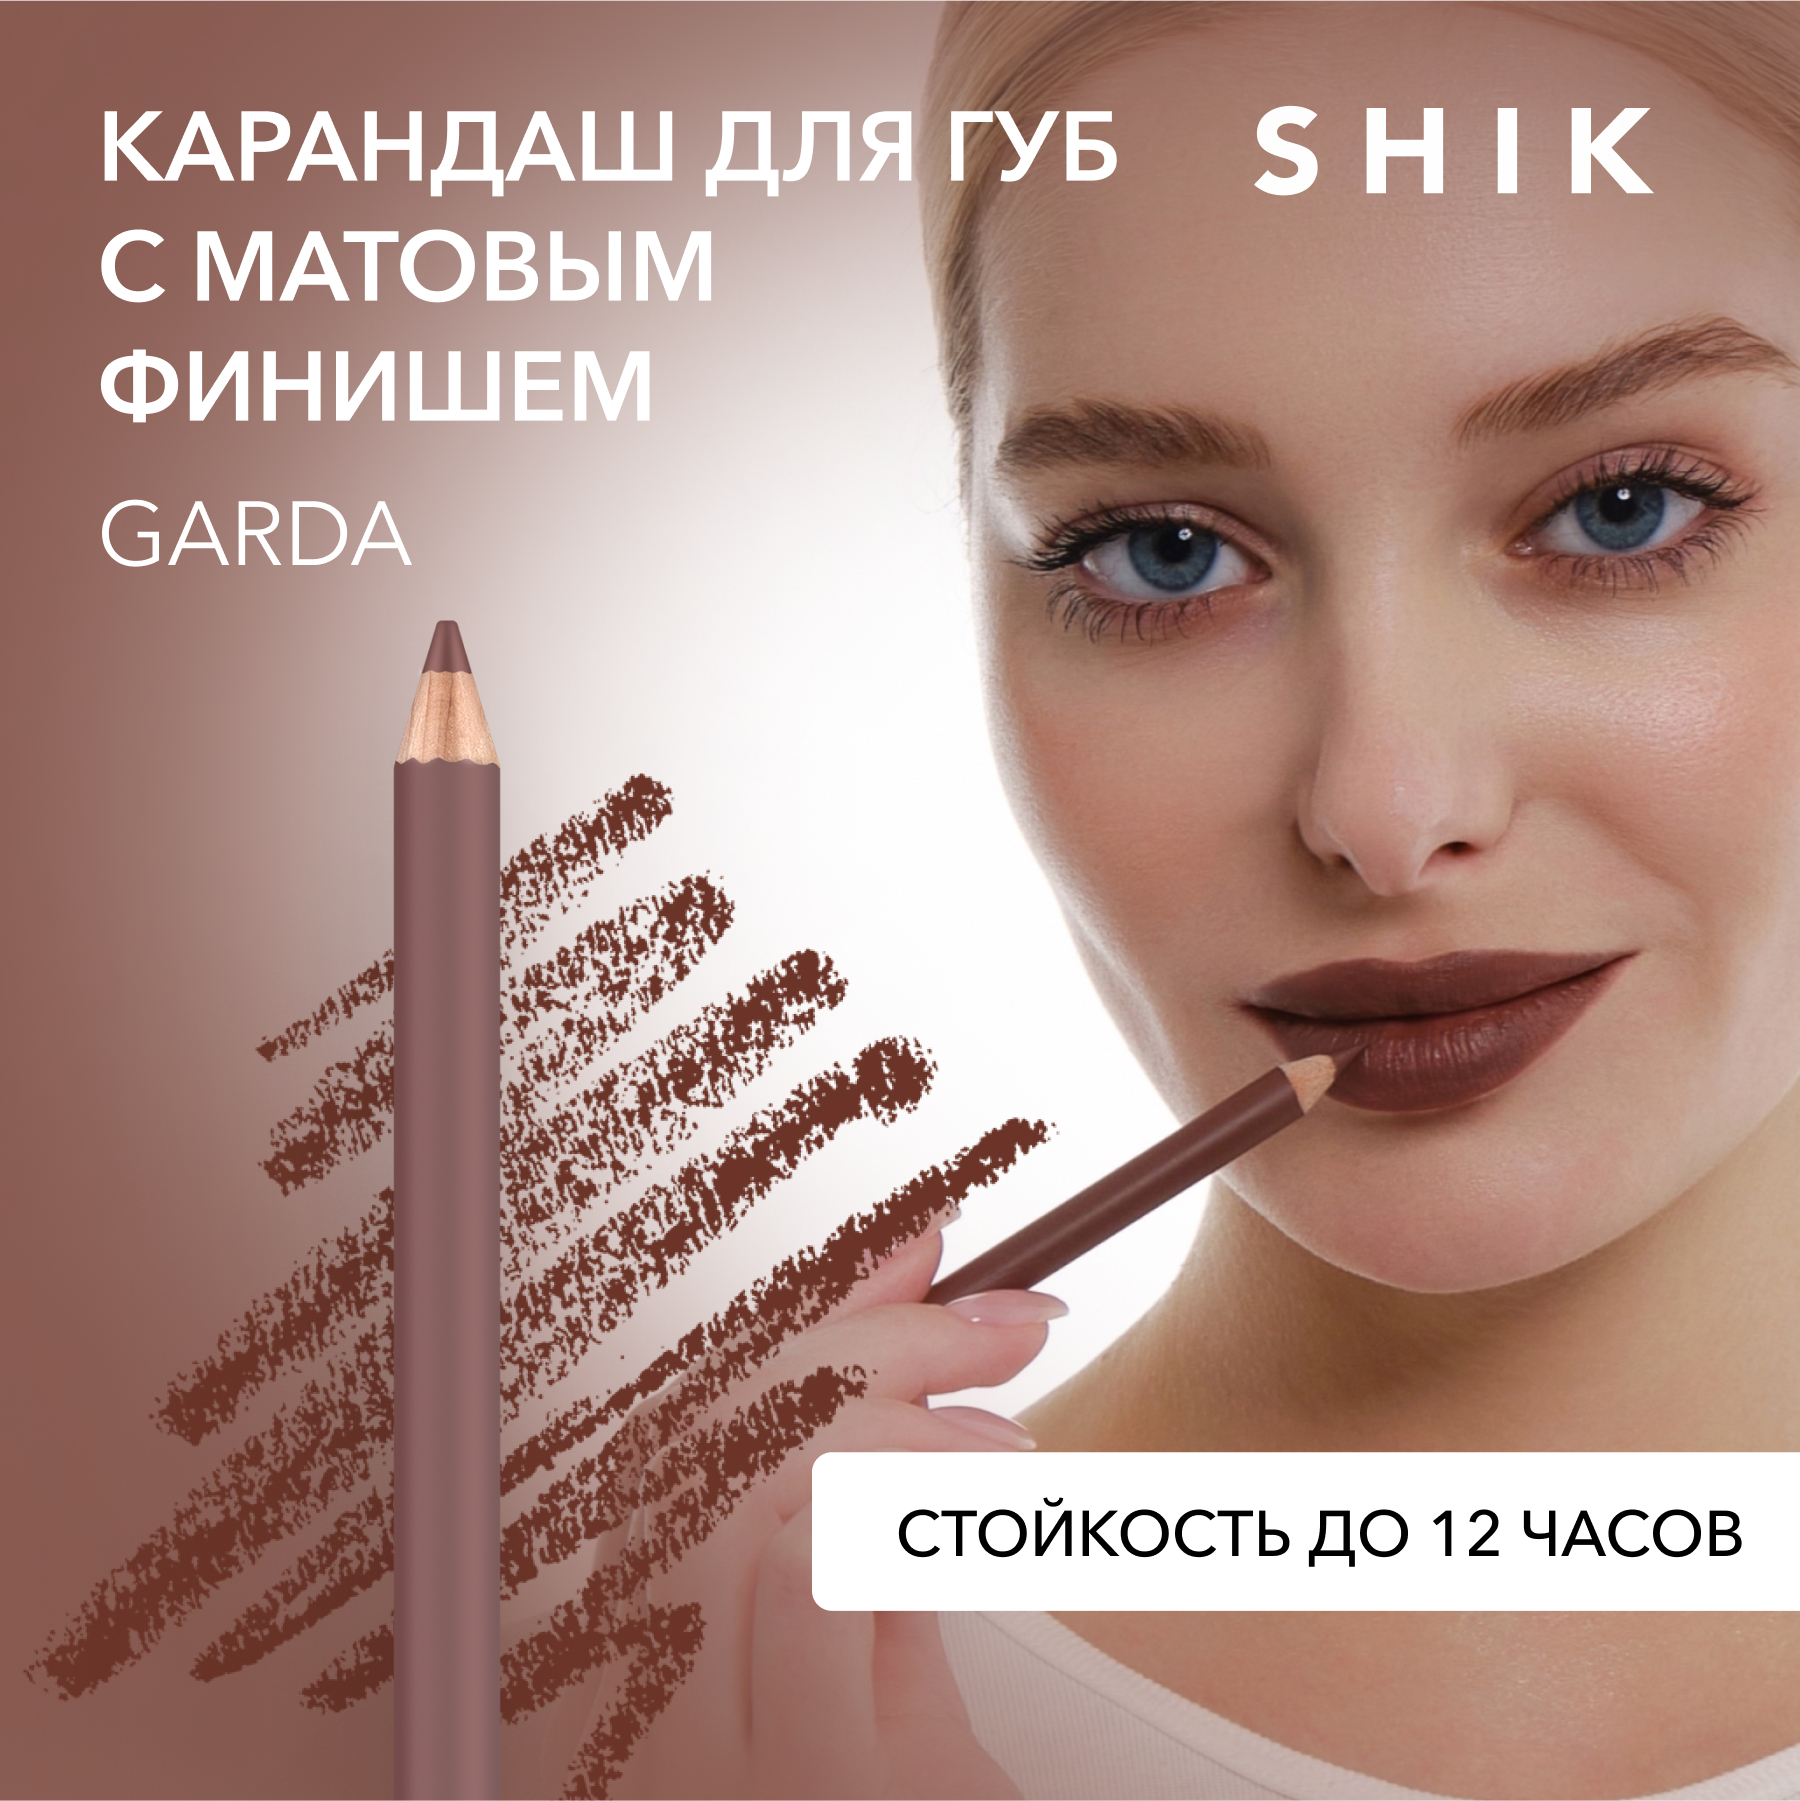 Карандаш для губ SHIK Lip Pencil тон Garda 1,14 г карандаш для губ shik lip pencil тон garda 1 14 г